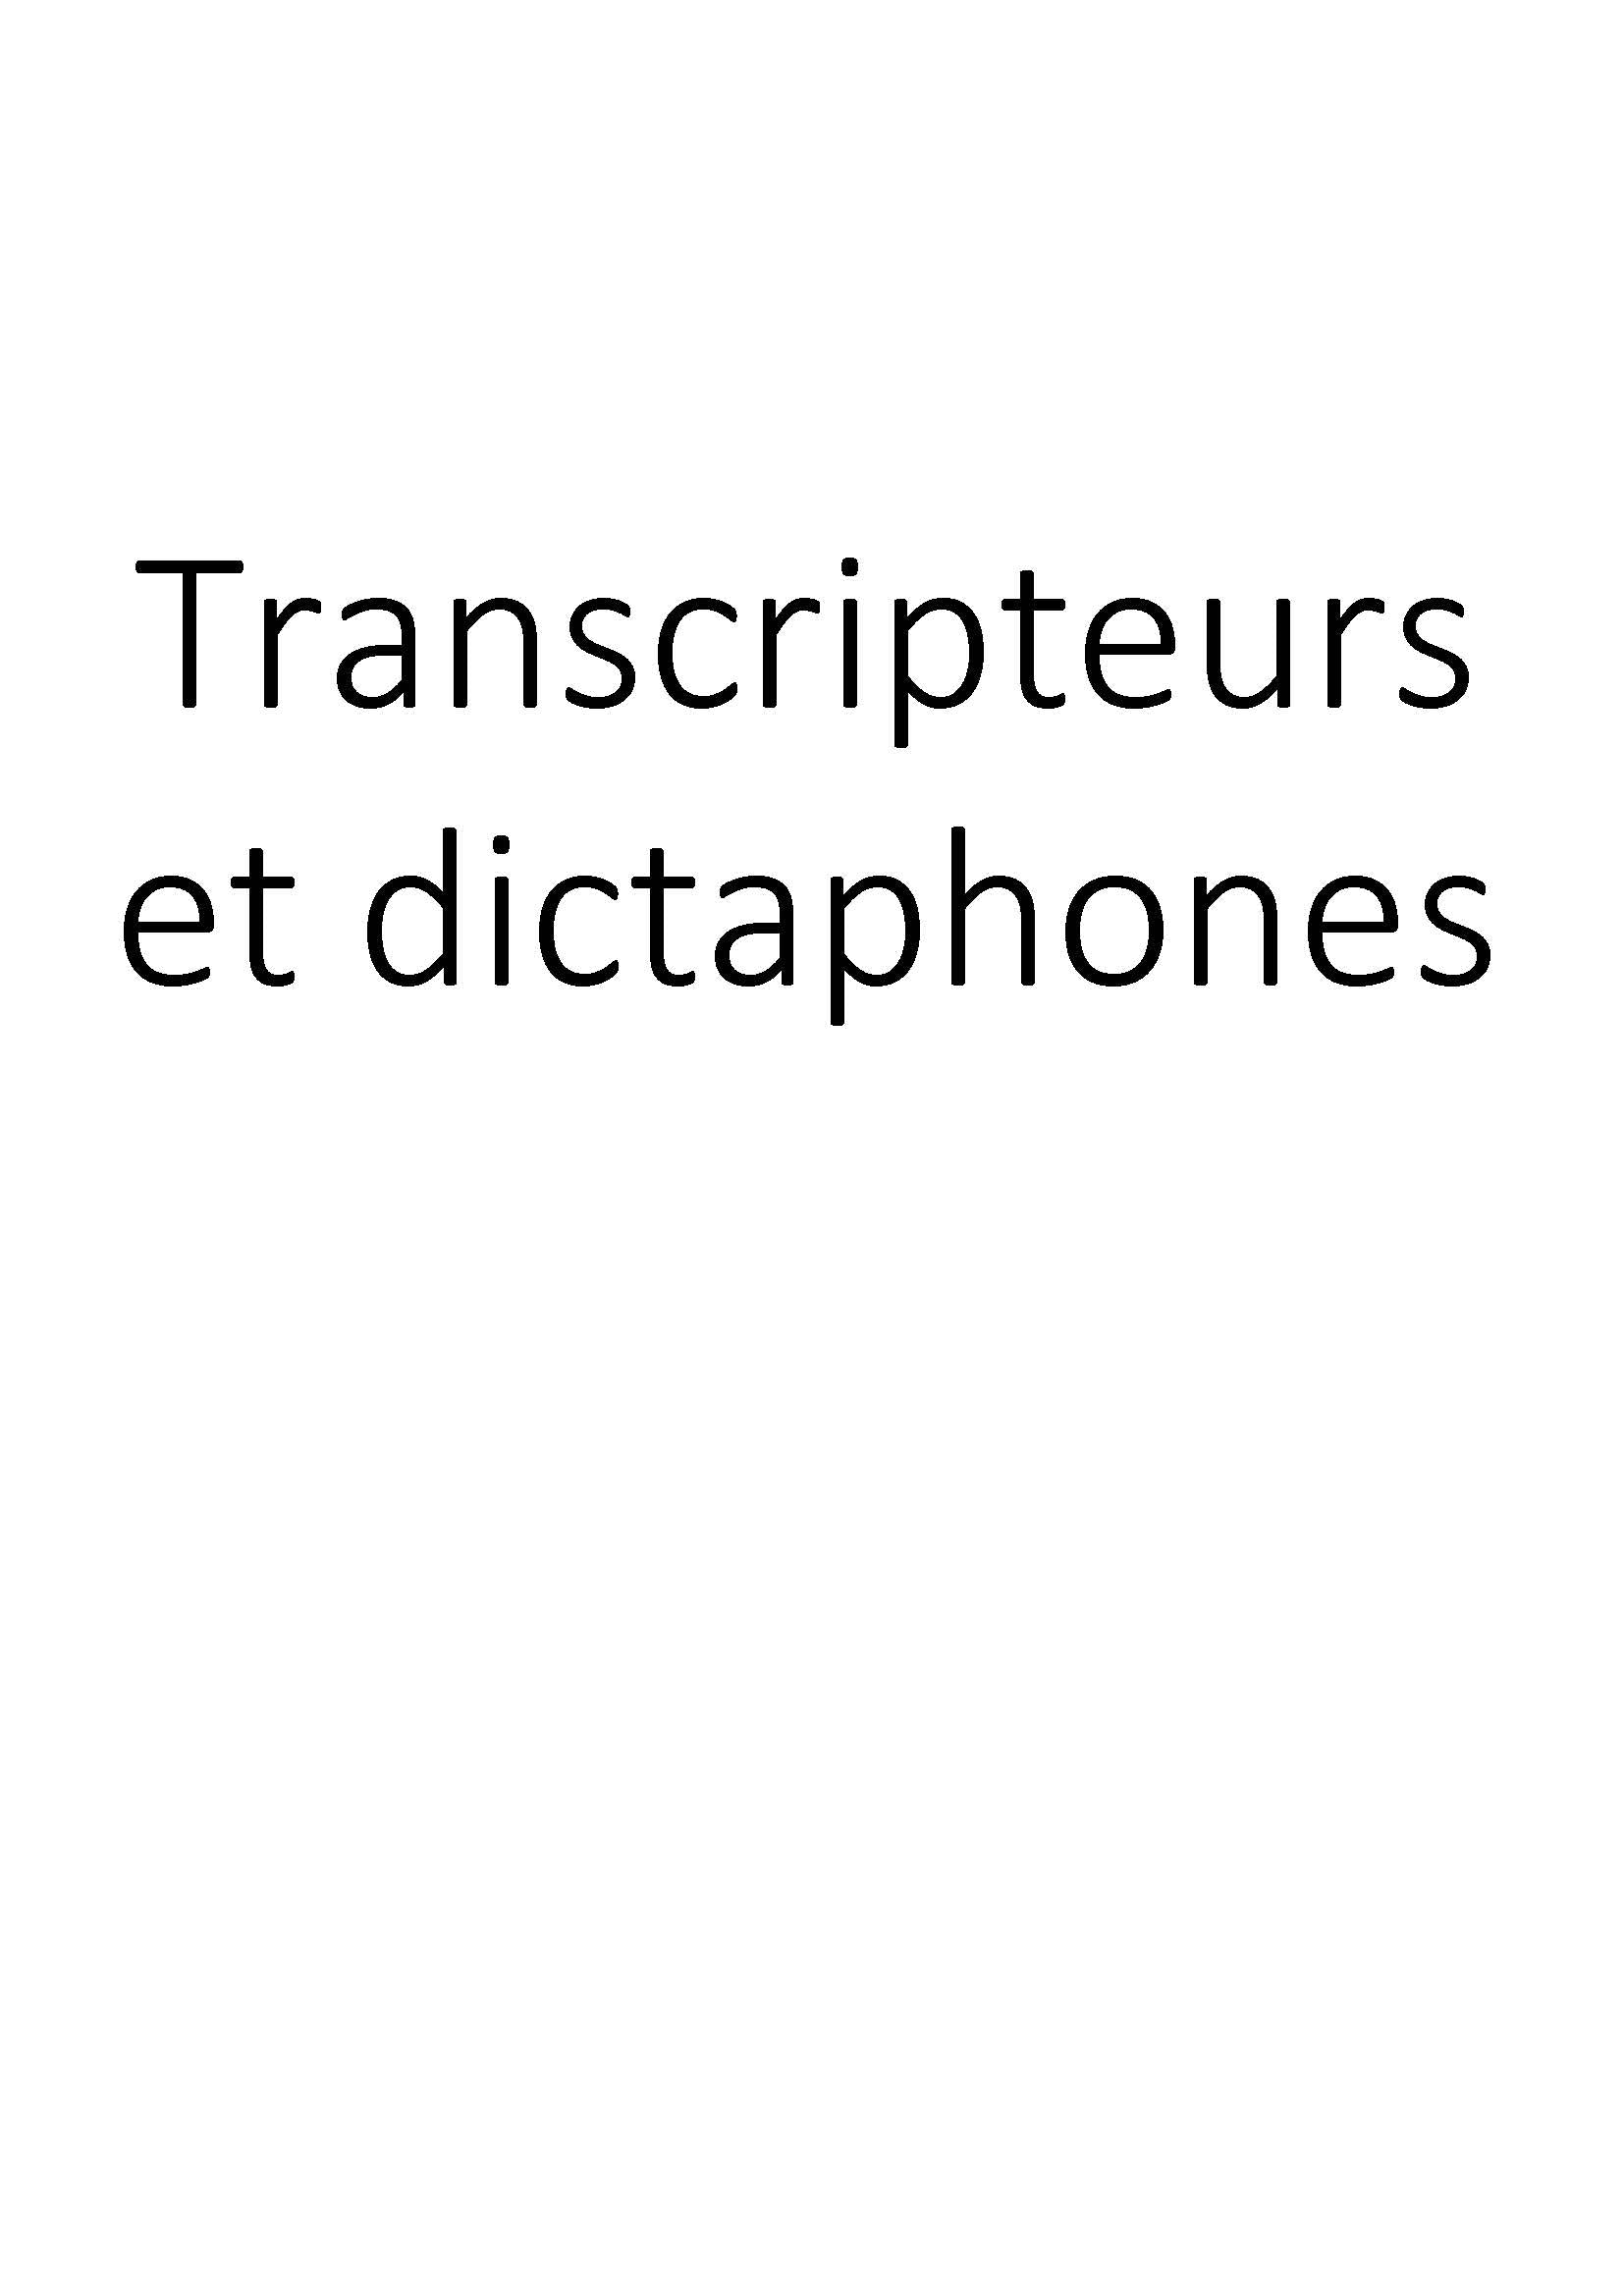 Transcripteurs et dictaphones clicktofournisseur.com